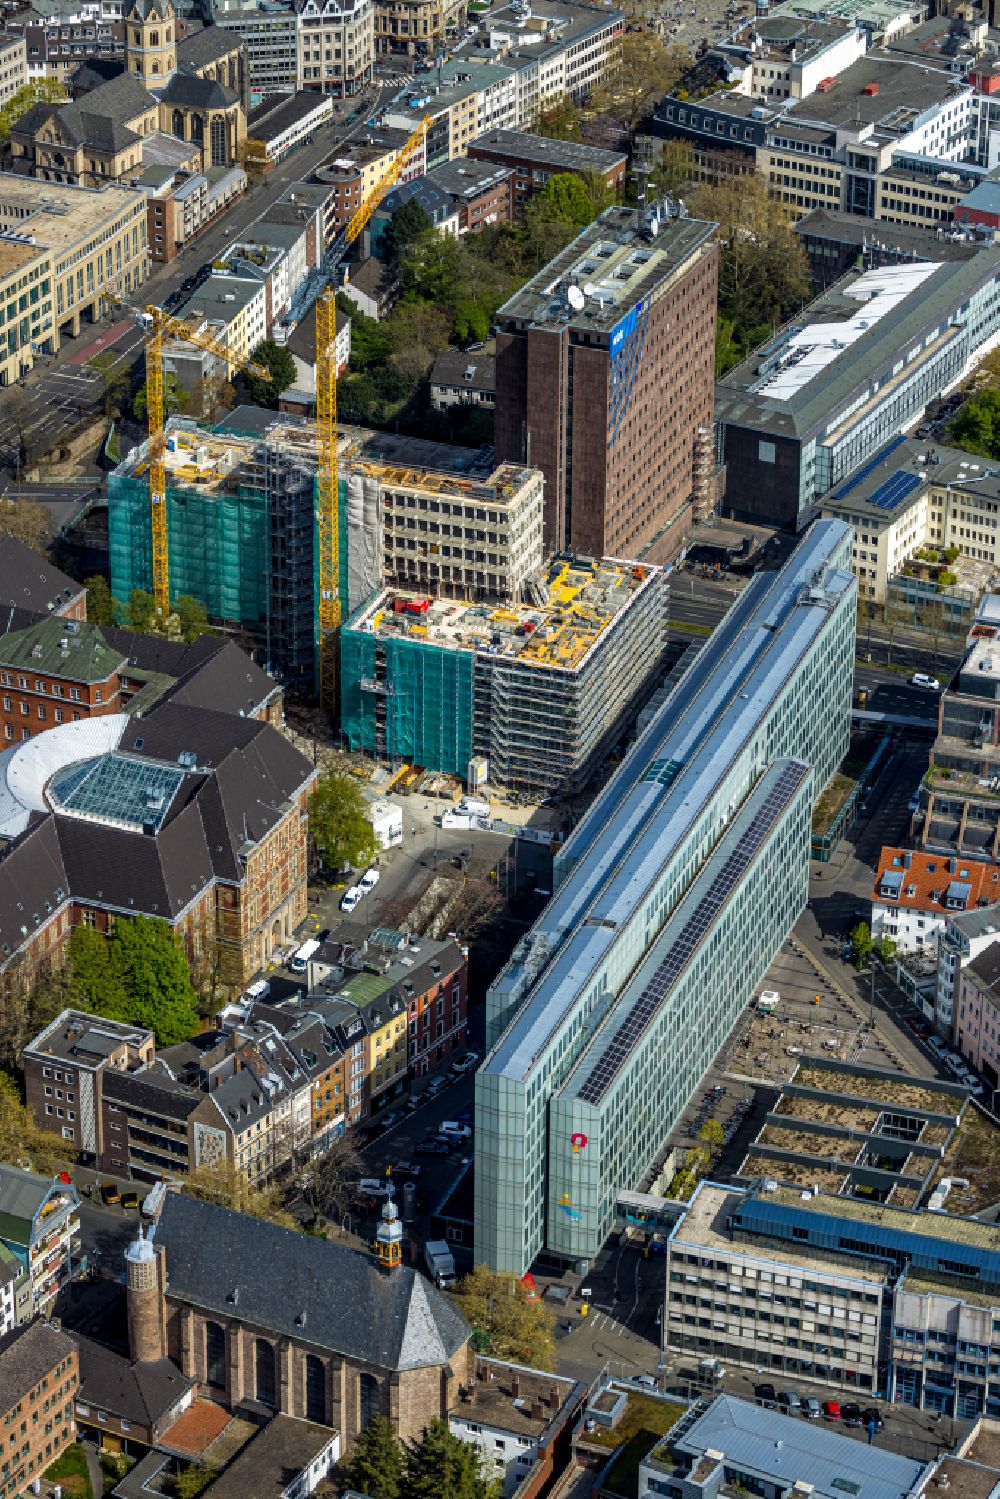 Luftbild Köln - Sanierung eines Gebäudekomplexes WDR-Filmhaus in Köln im Bundesland Nordrhein-Westfalen, Deutschland